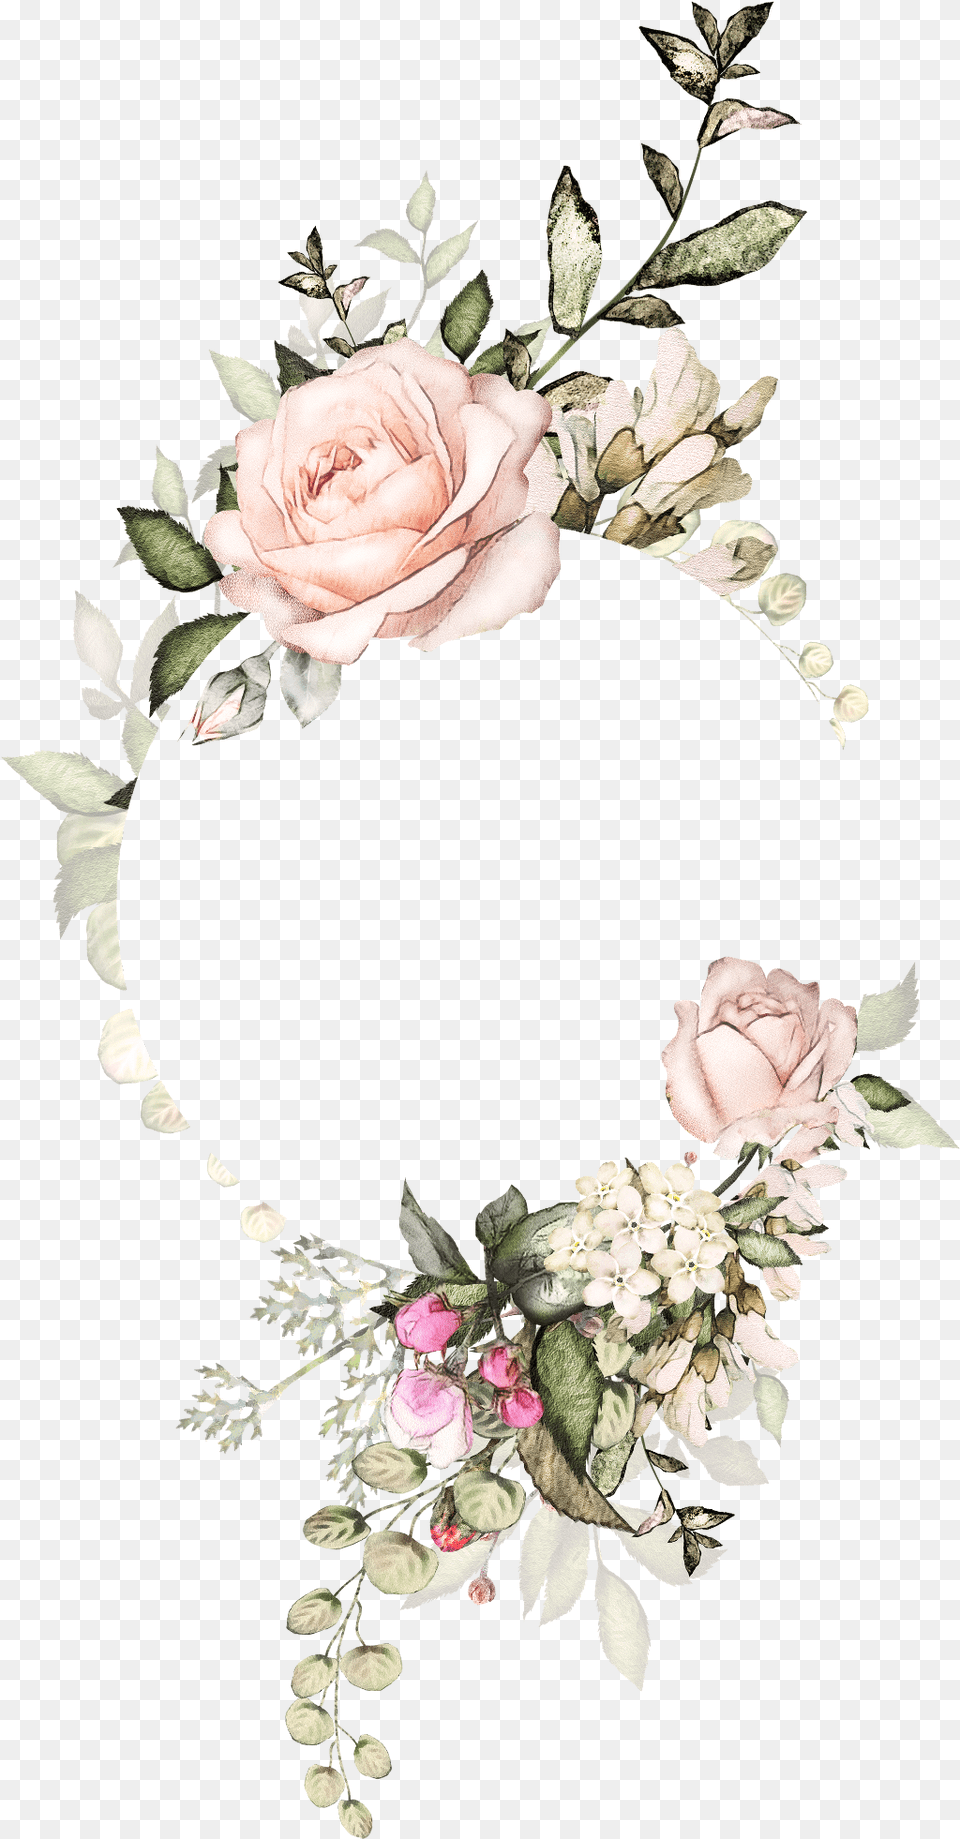 Watercolor Flower Frame Frameflower Aesthetic Flower Design For Wedding Invitation, Rose, Plant, Petal, Pattern Png